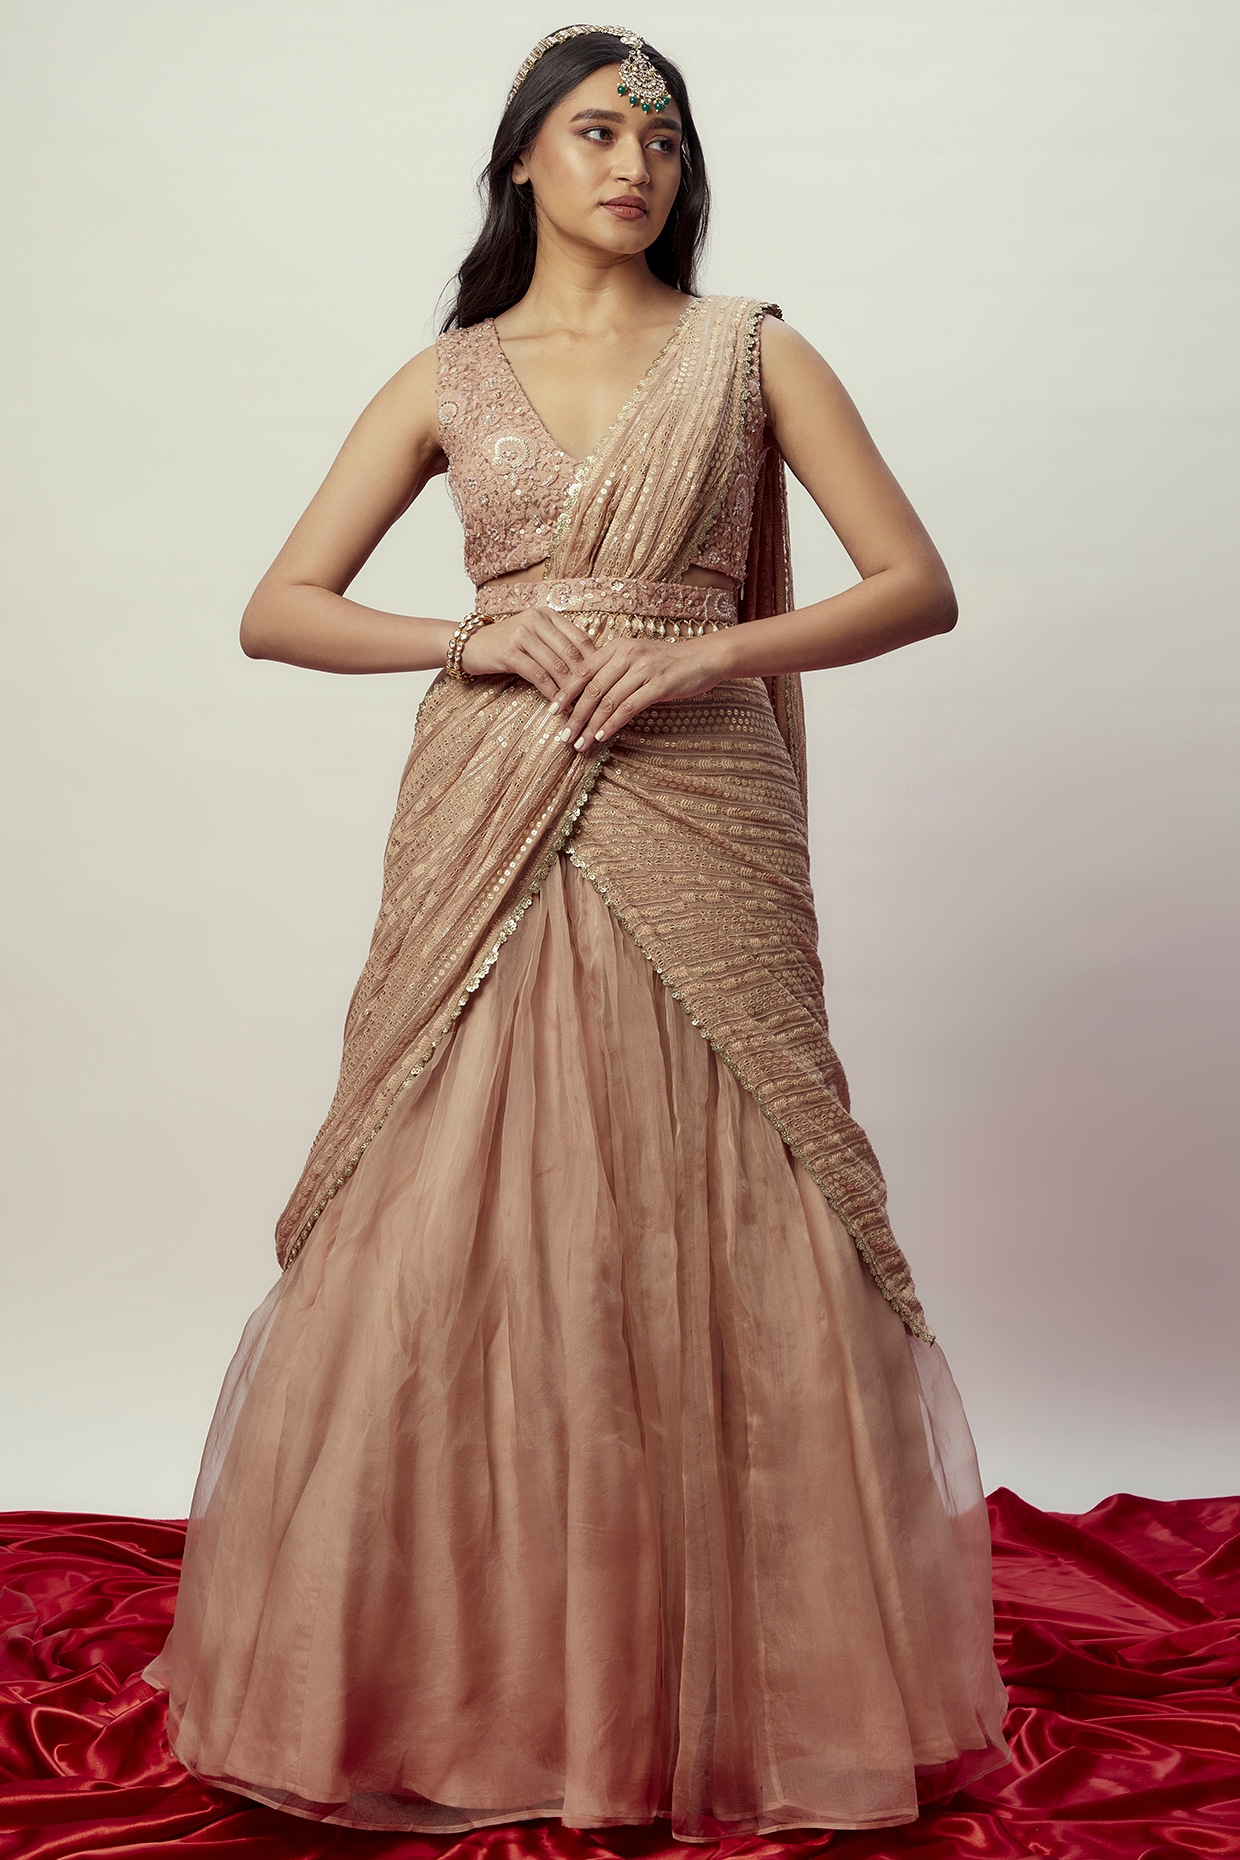 40 Elegant Half Saree Lehenga Designs For The South Indian Brides! | Half saree  lehenga, Half saree designs, Saree designs